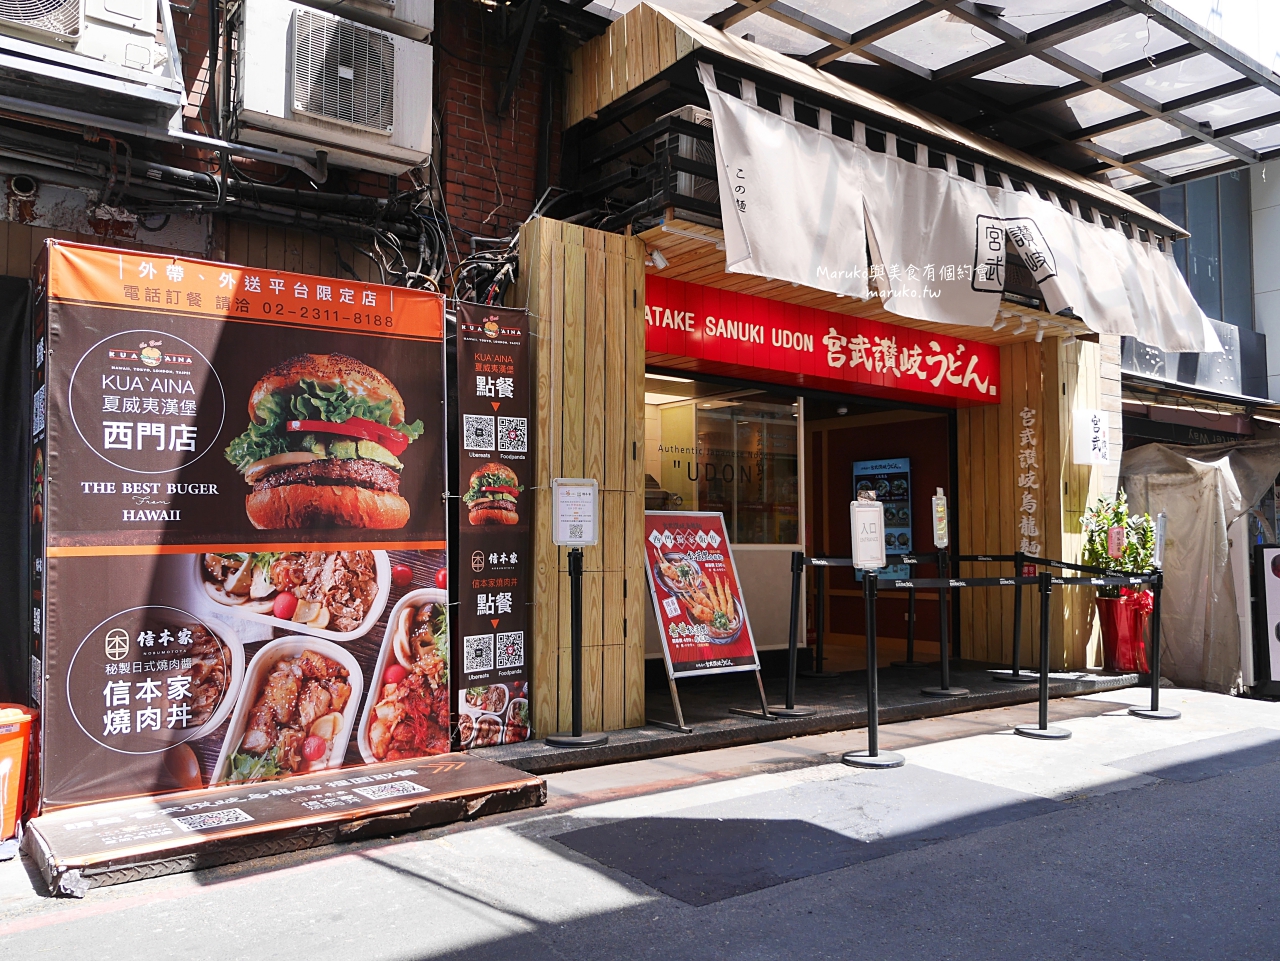 【新北林口】KUA-AINA Burger｜來自夏威夷的漢堡餐廳媲美全世界最好吃的漢堡/林口三井美食 @Maruko與美食有個約會